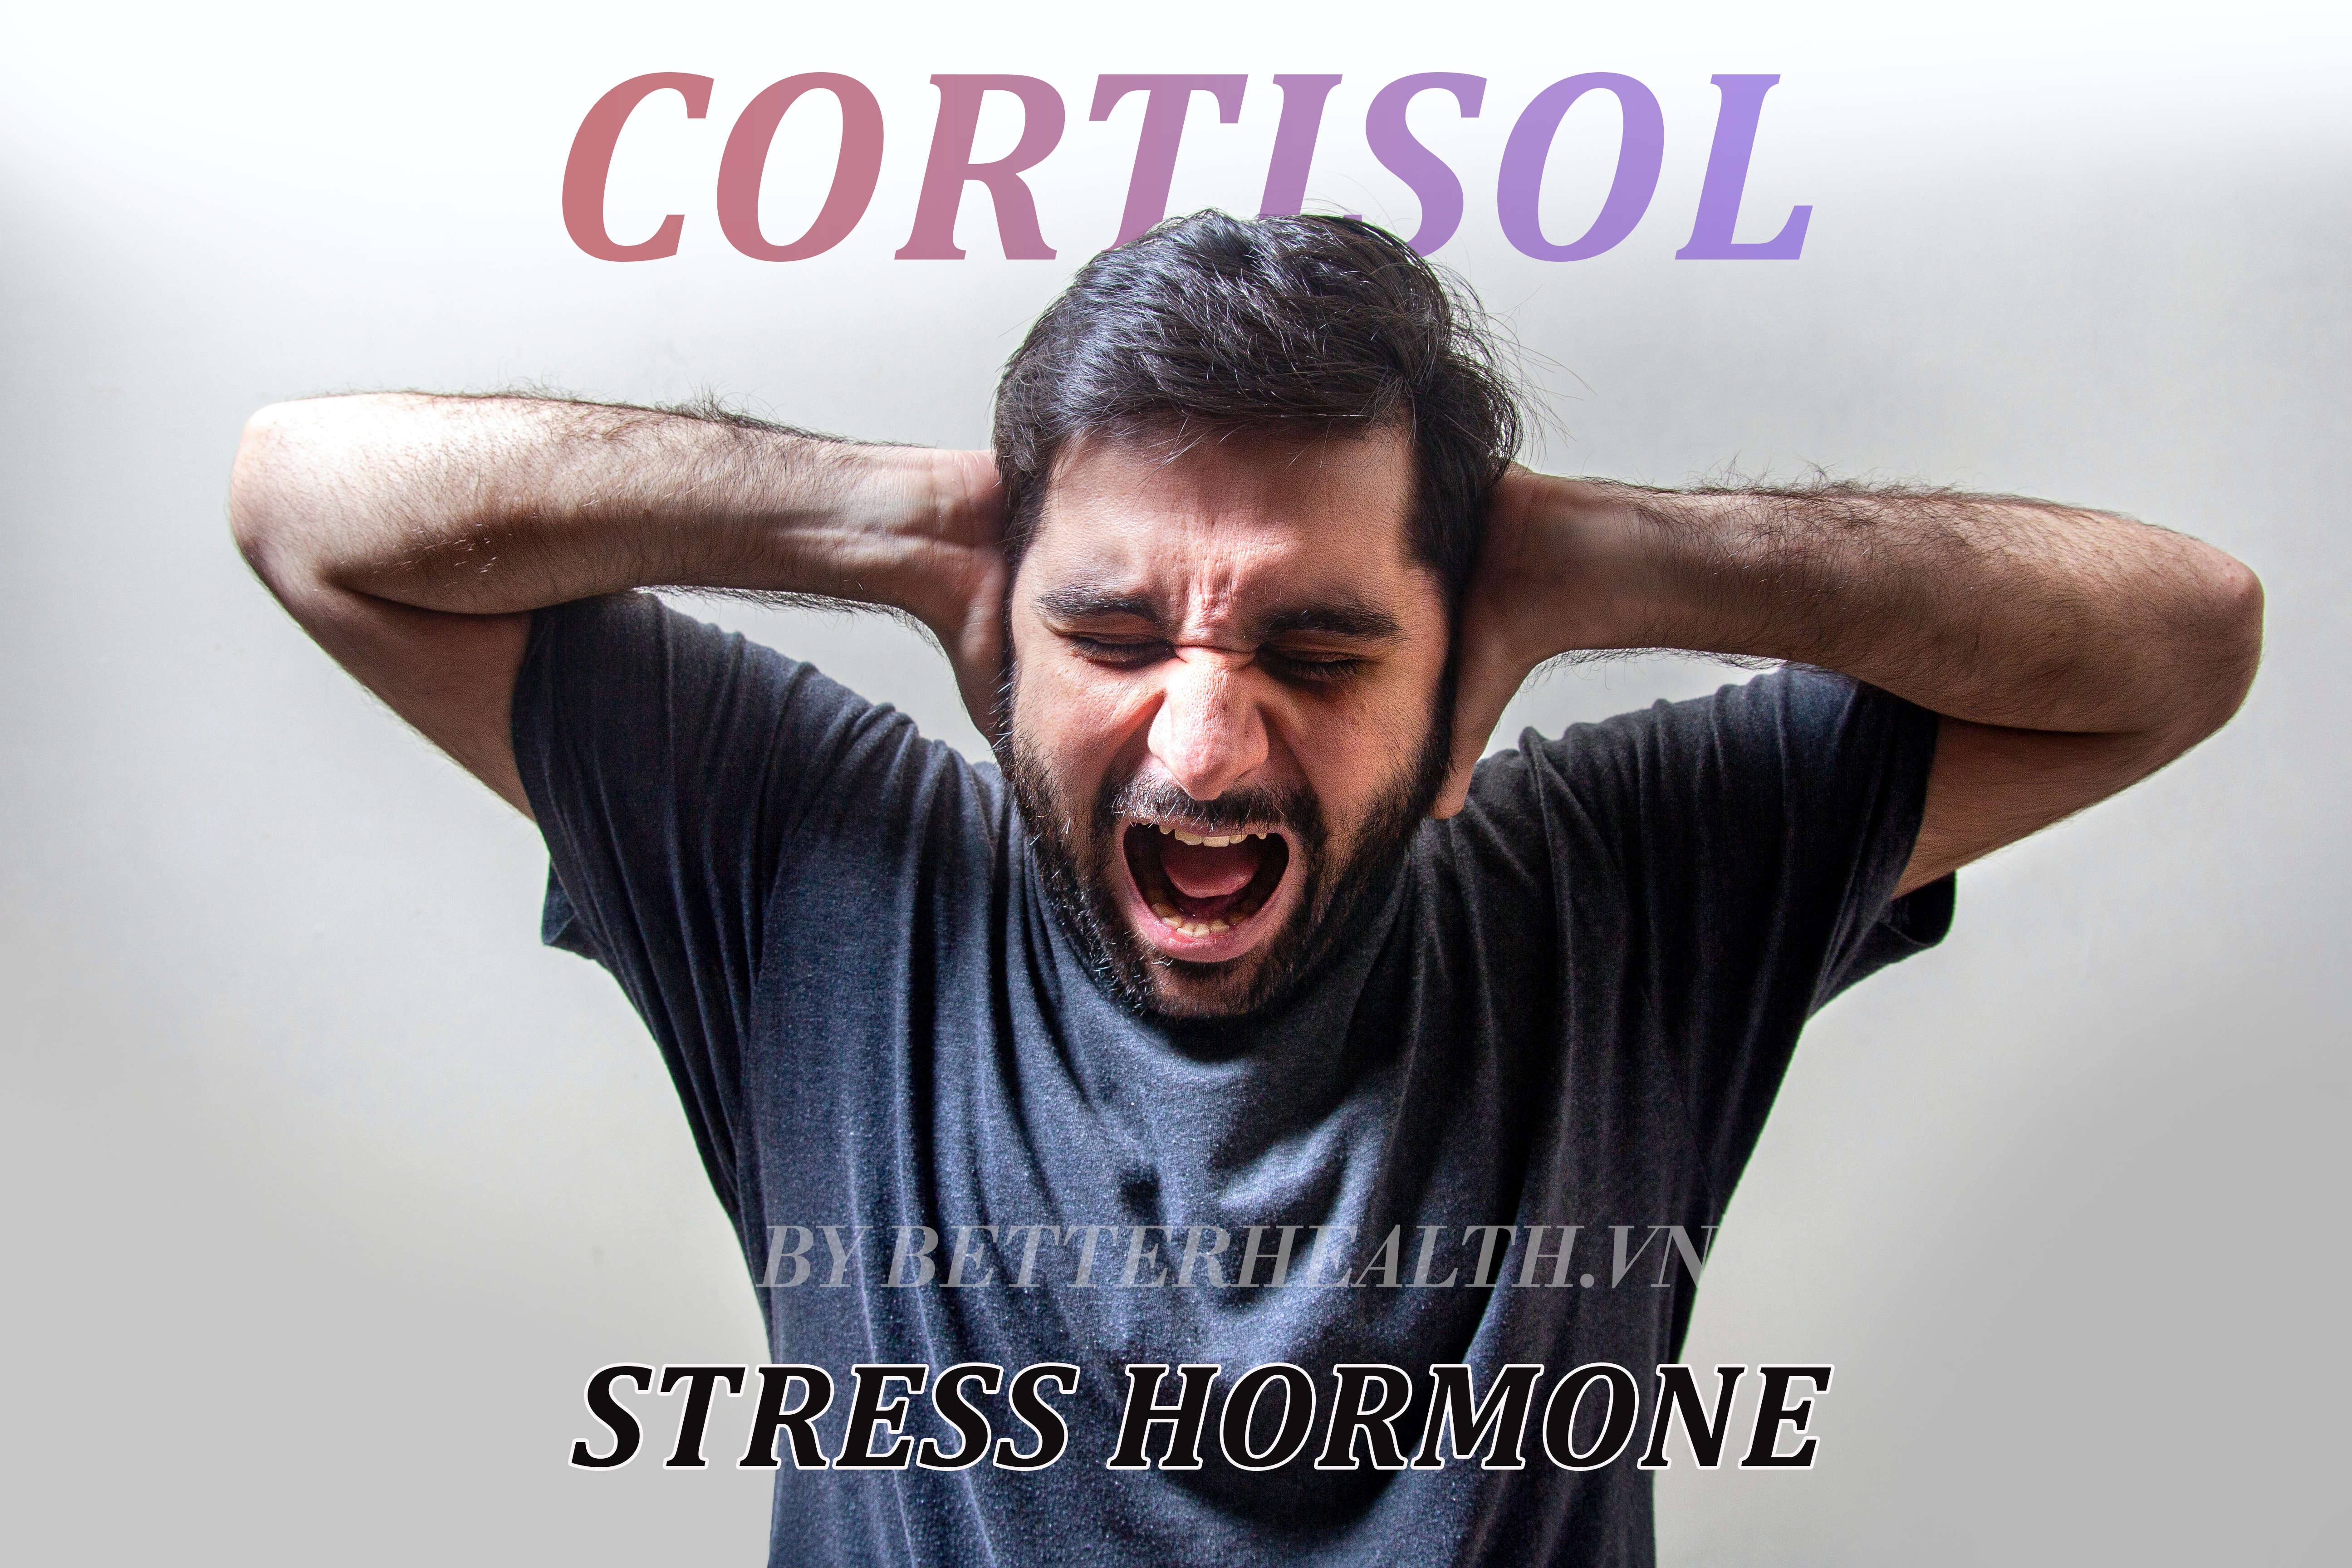 Cortisol là gì? Và làm thế nào để điều chỉnh mức cortisol trong cơ thể cân bằng hơn?